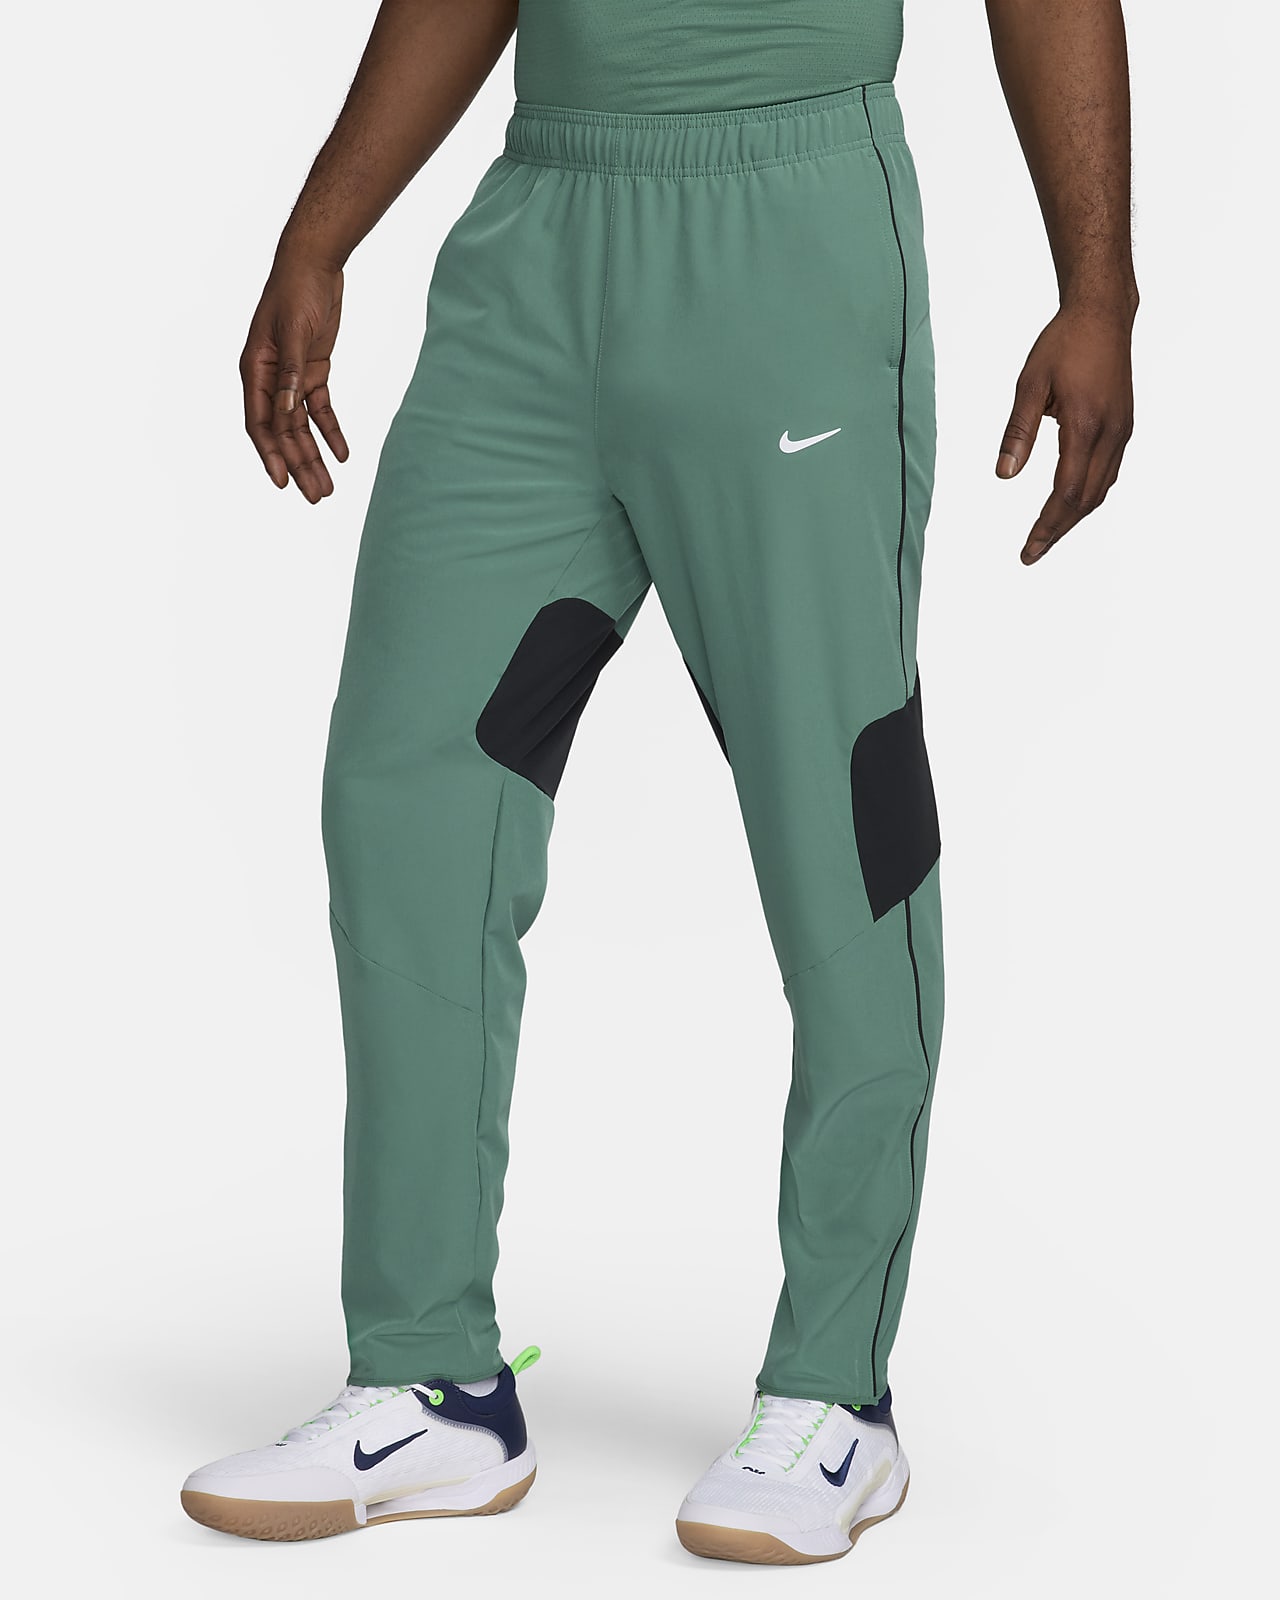 Nikecourt Black - Man Pants